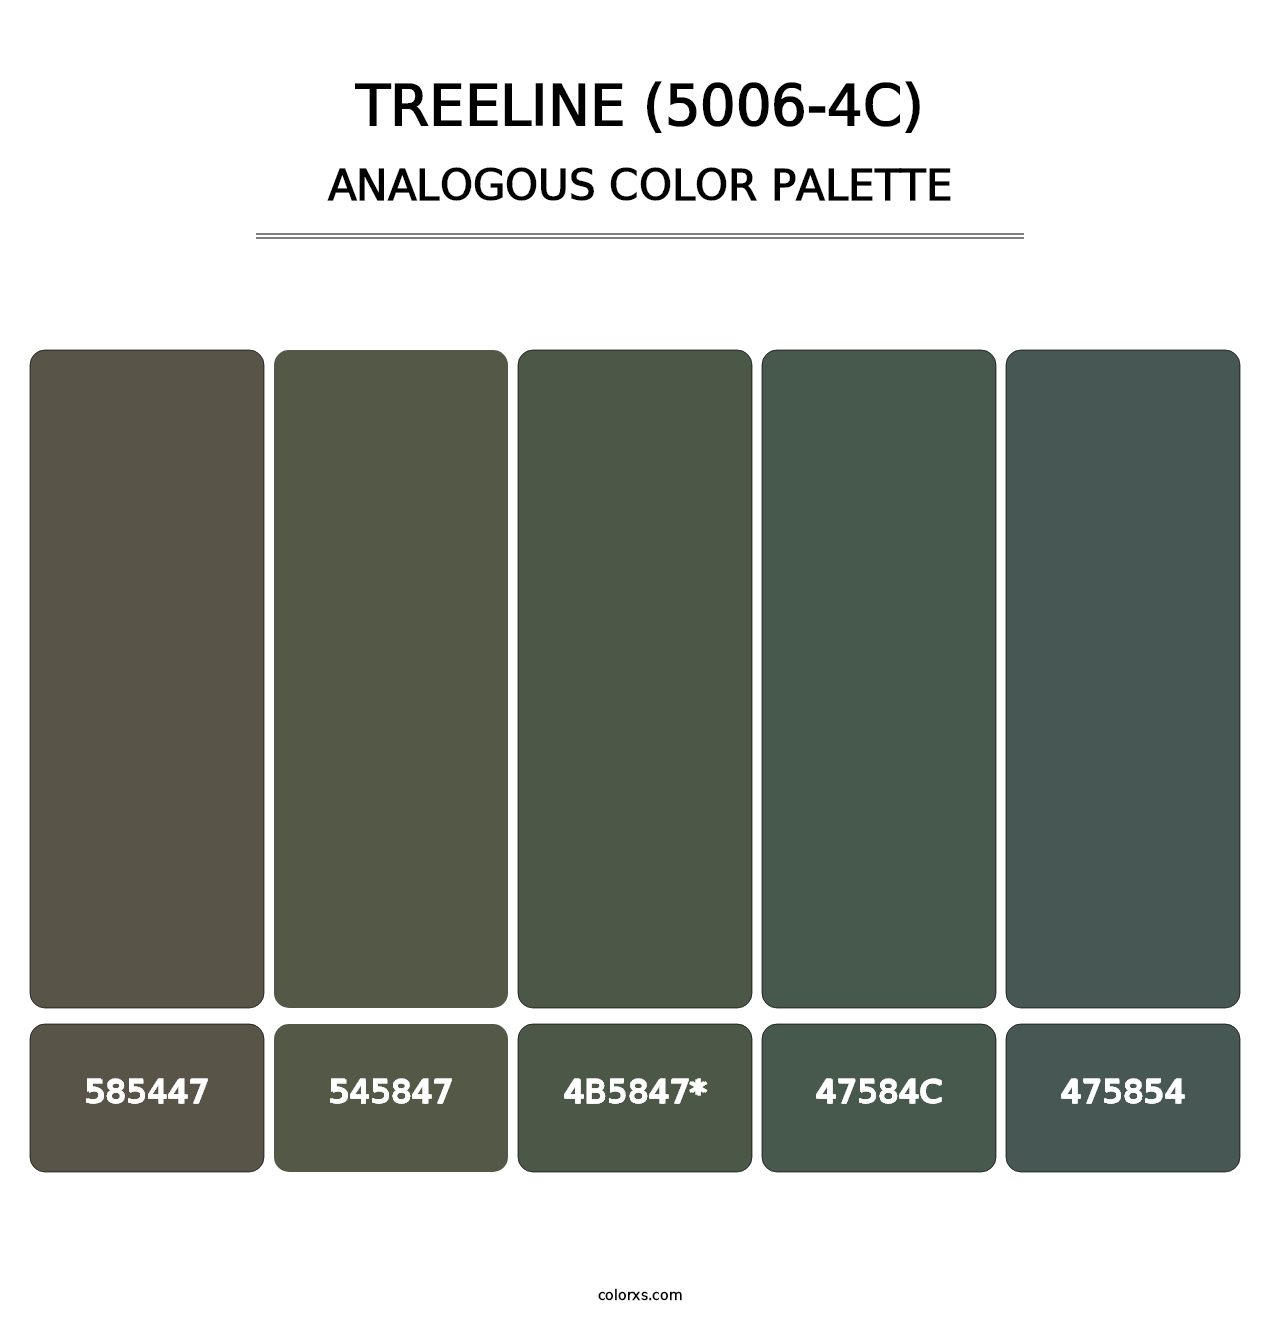 Treeline (5006-4C) - Analogous Color Palette